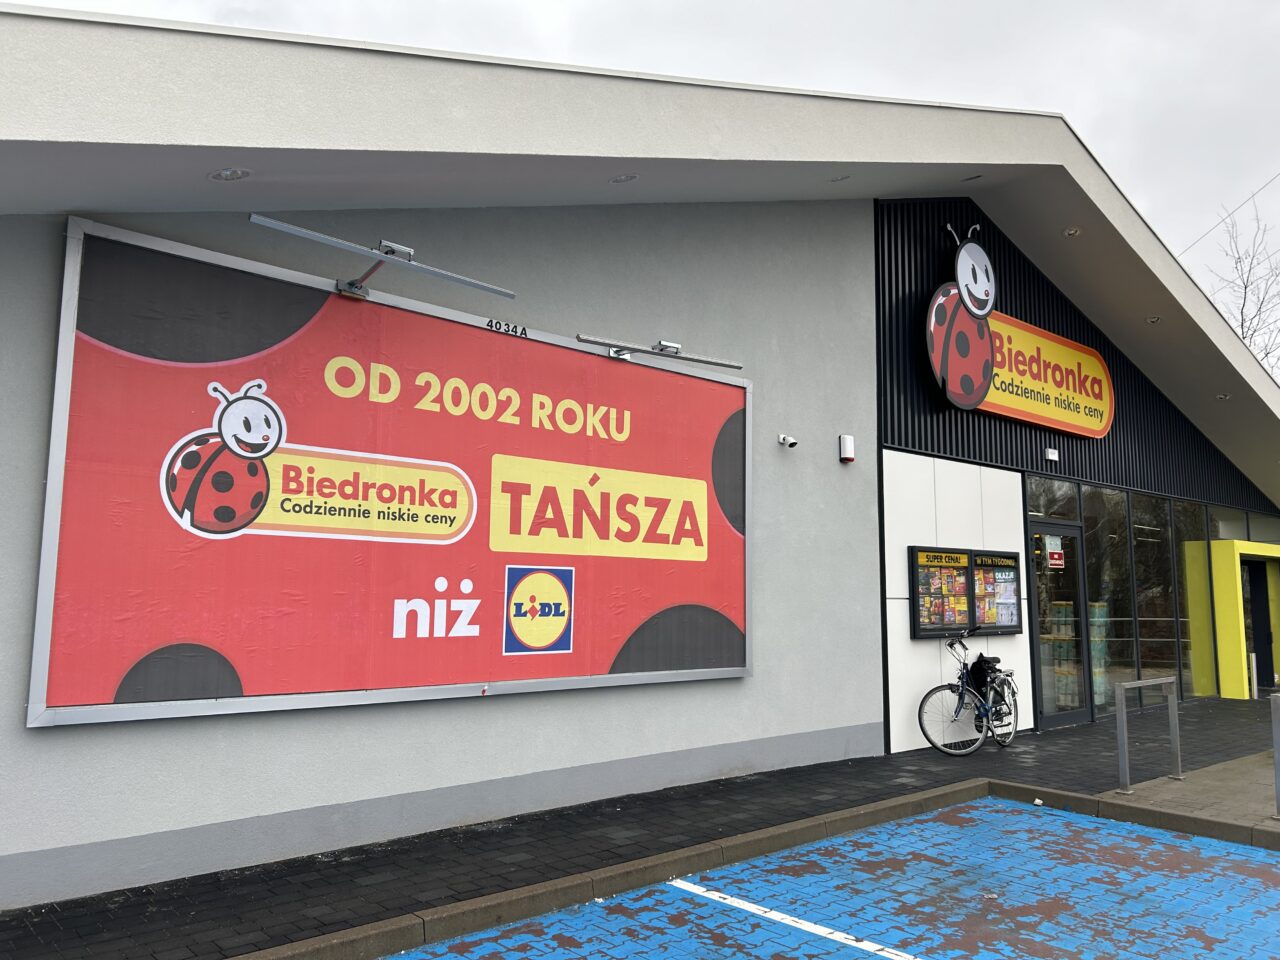 Sklep Biedronka z dużym czerwonym banerem reklamującym niskie ceny od 2002 roku w porównaniu z Lidlem, obok wejście do sklepu i zaparkowany rower.